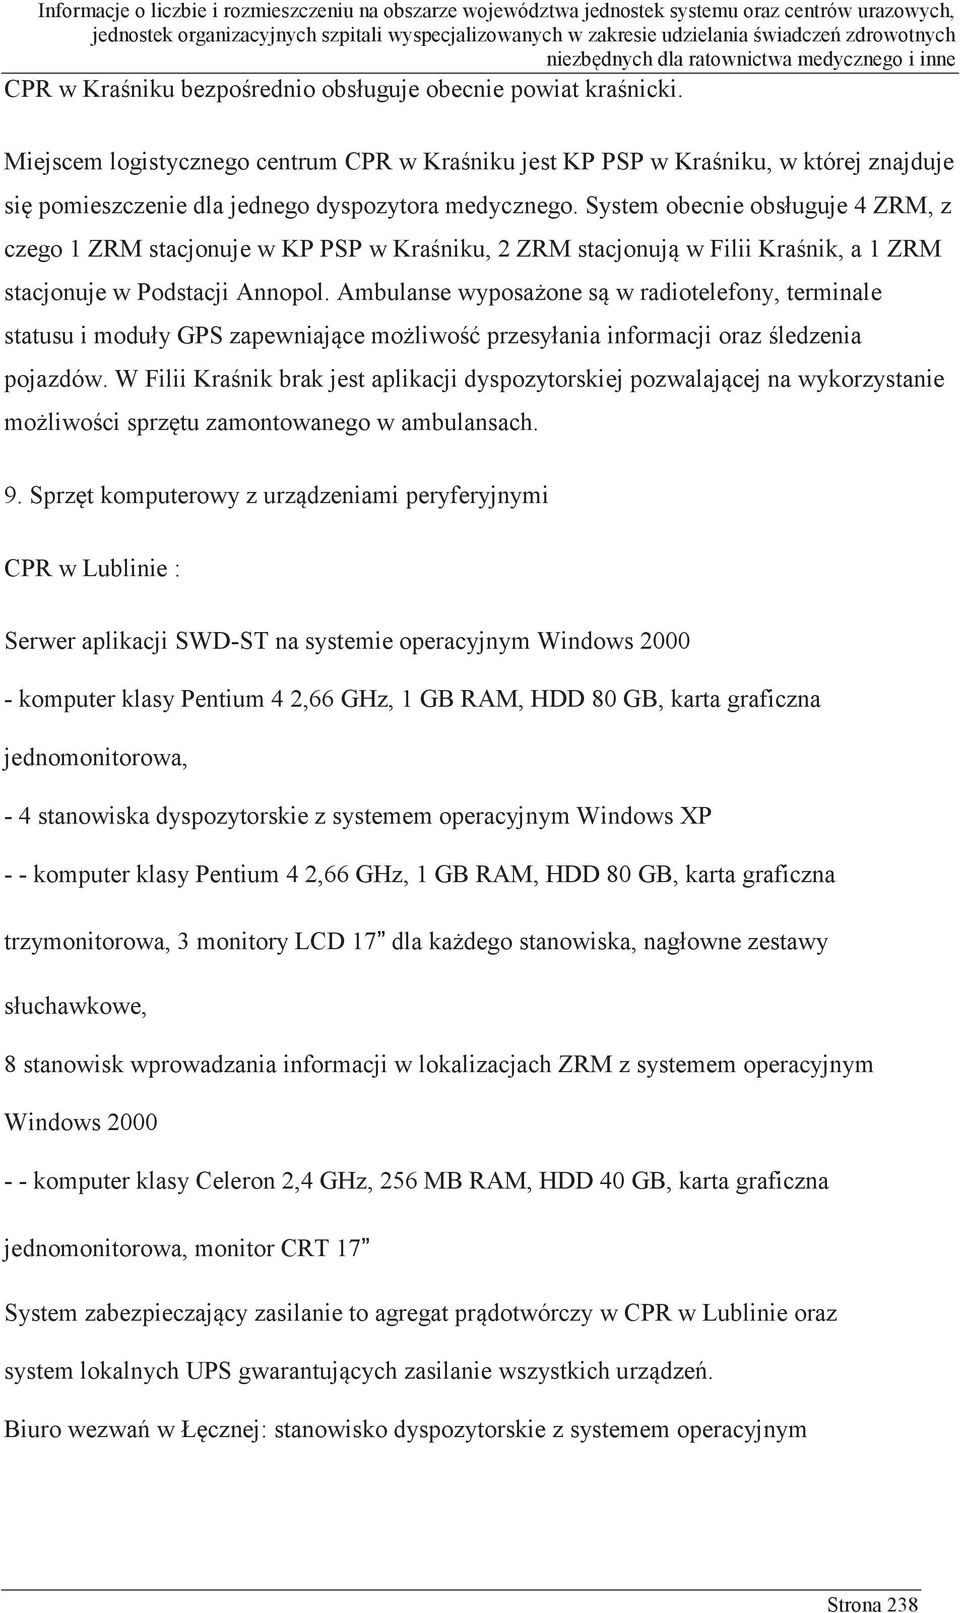 System obecnie obsługuje 4 ZRM, z czego 1 ZRM stacjonuje w KP PSP w Kraśniku, 2 ZRM stacjonują w Filii Kraśnik, a 1 ZRM stacjonuje w Podstacji Annopol.